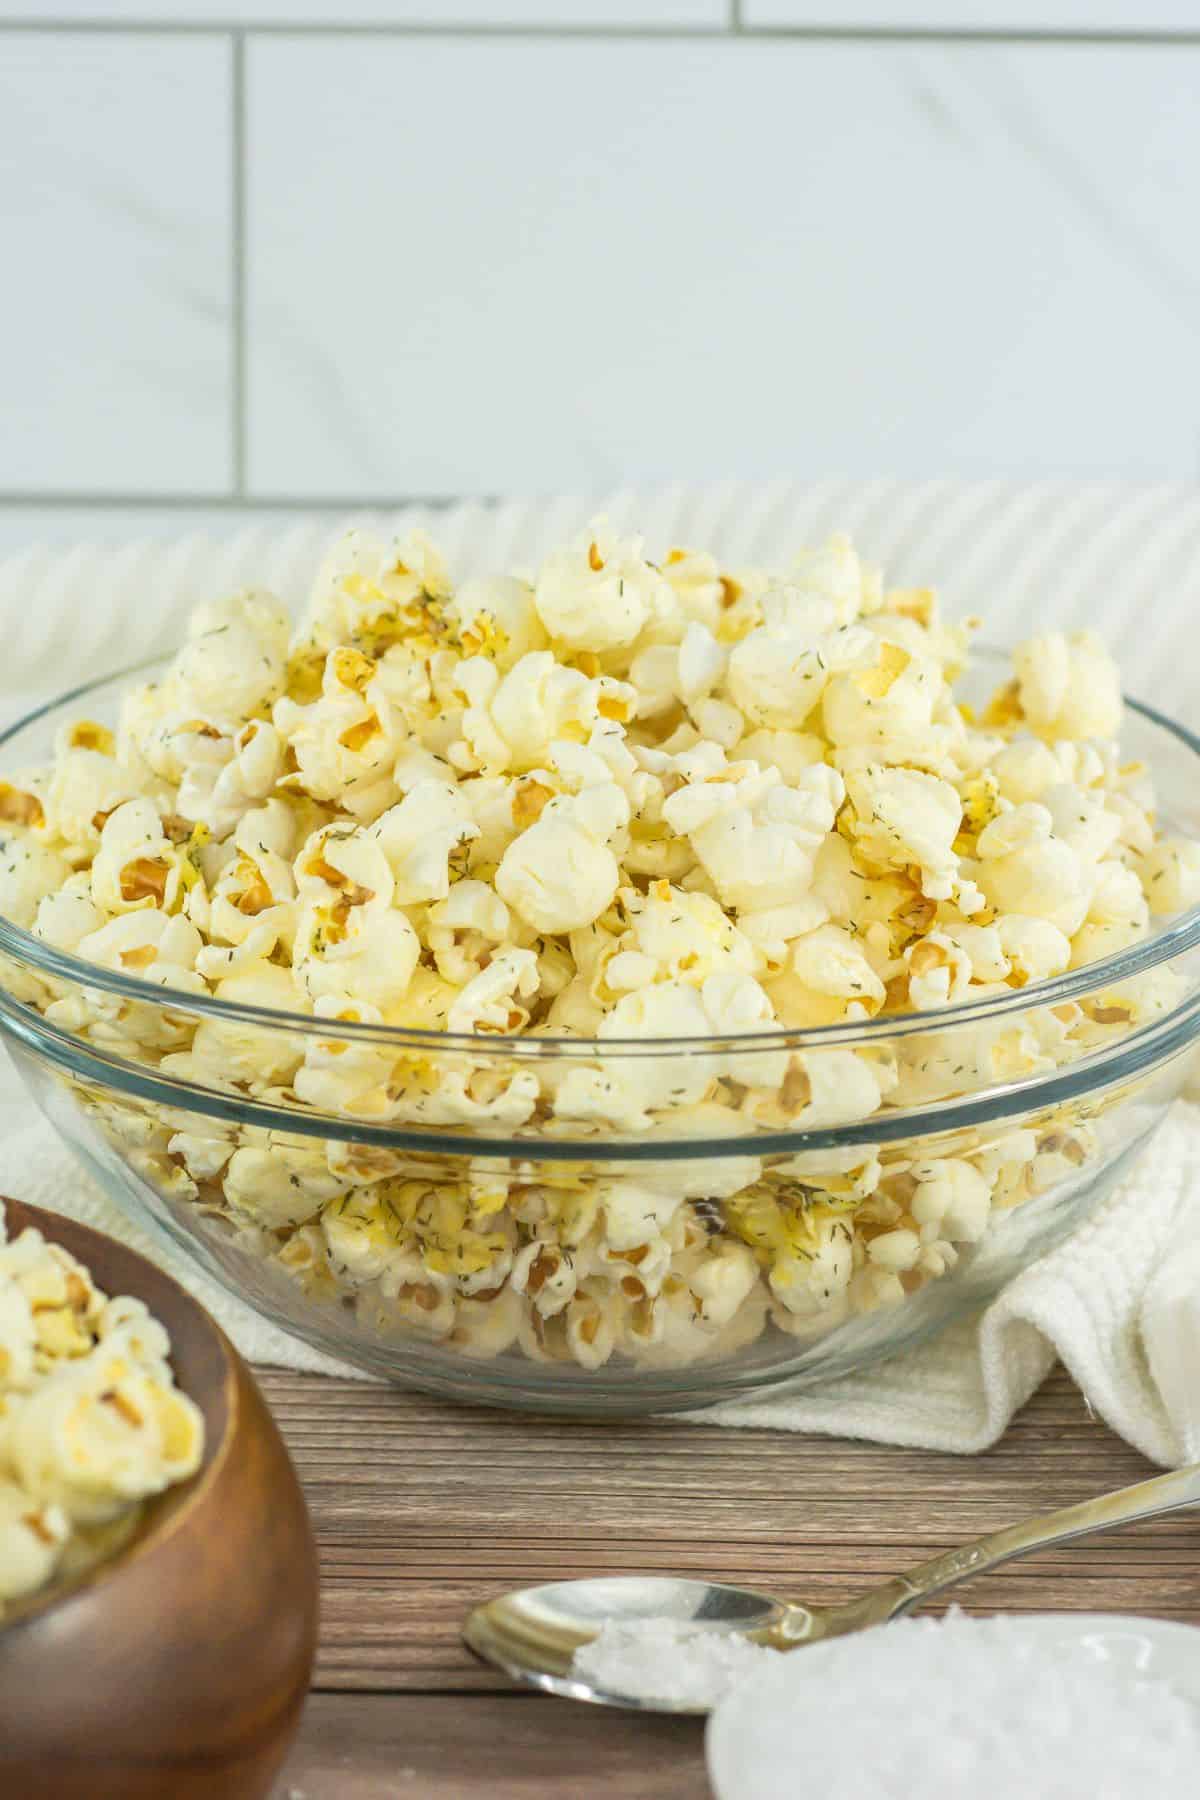 A large bowl of salt and vinegar flavored popcorn.